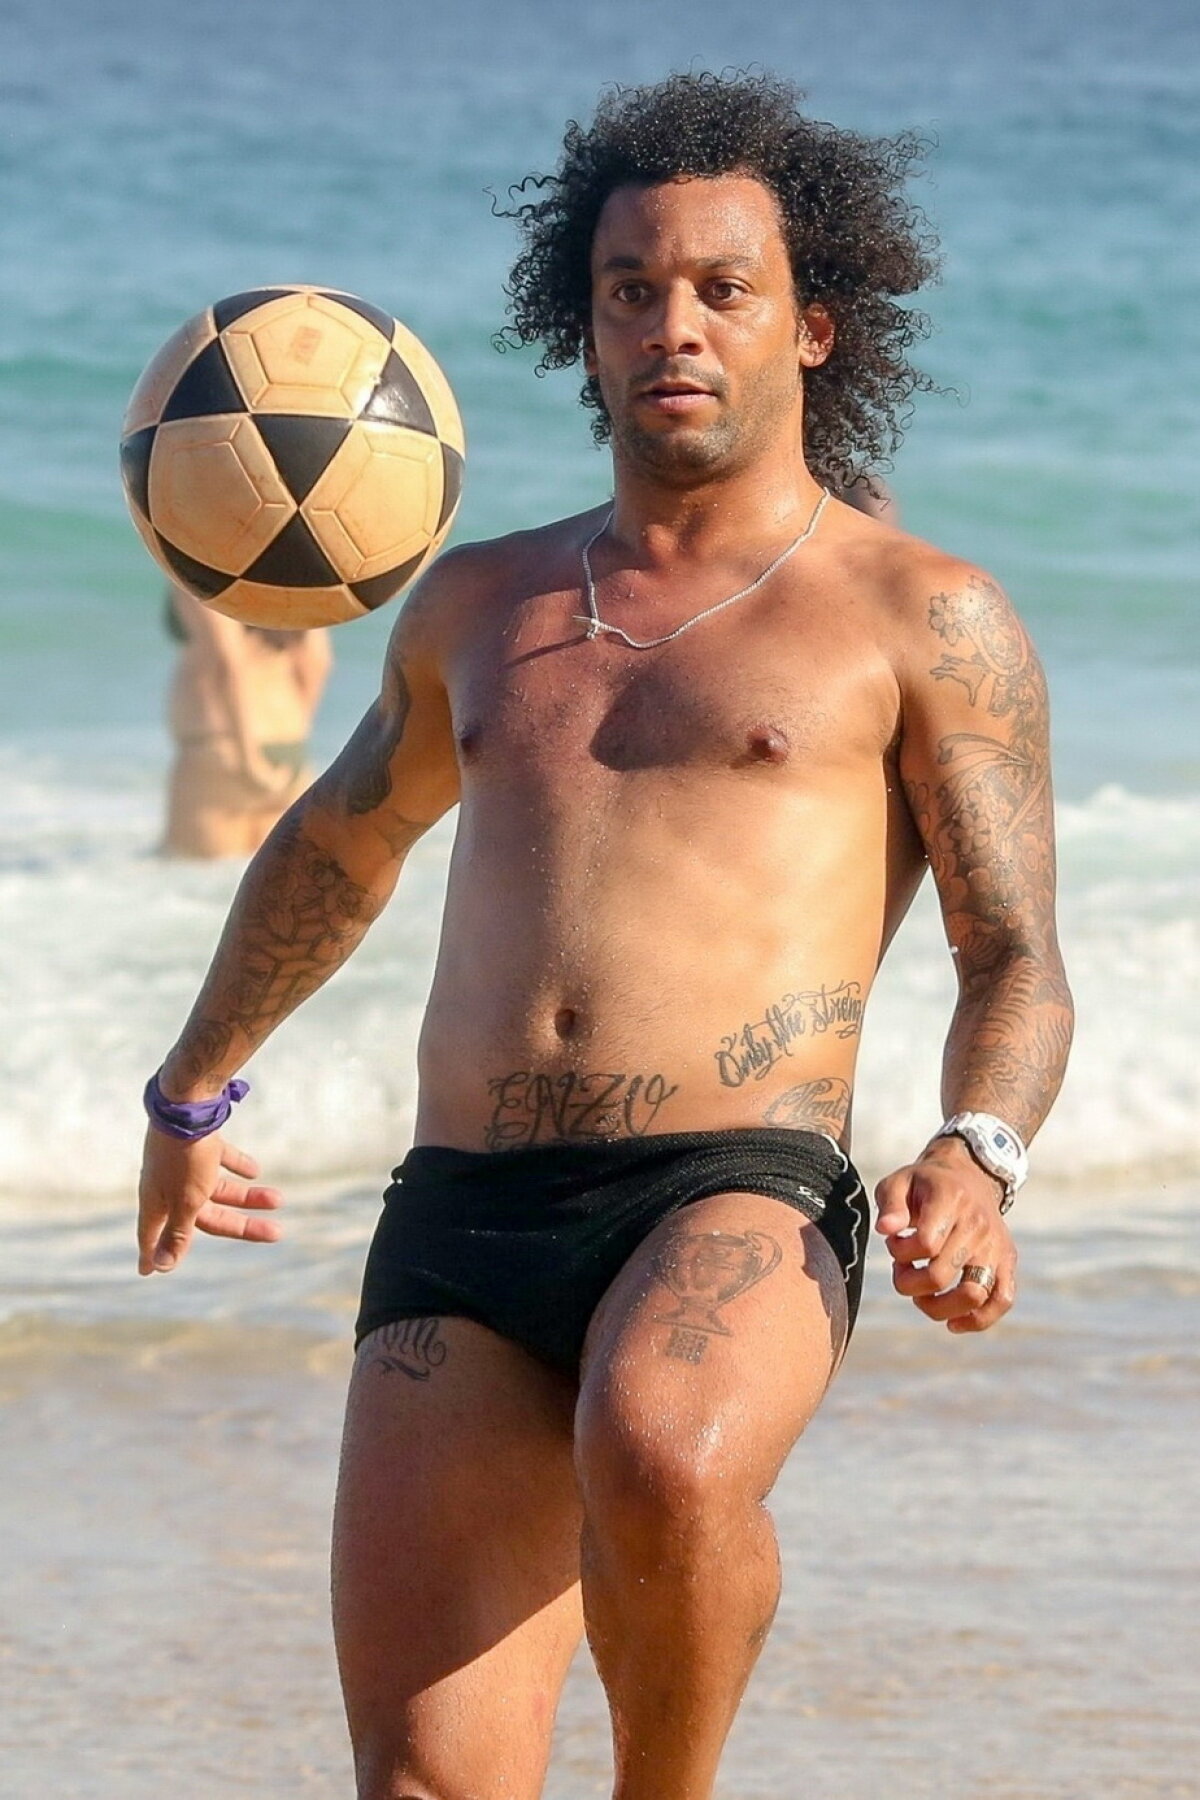 GALERIE FOTO Marcelo, la bustul gol pe plaja din Rio de Janeiro